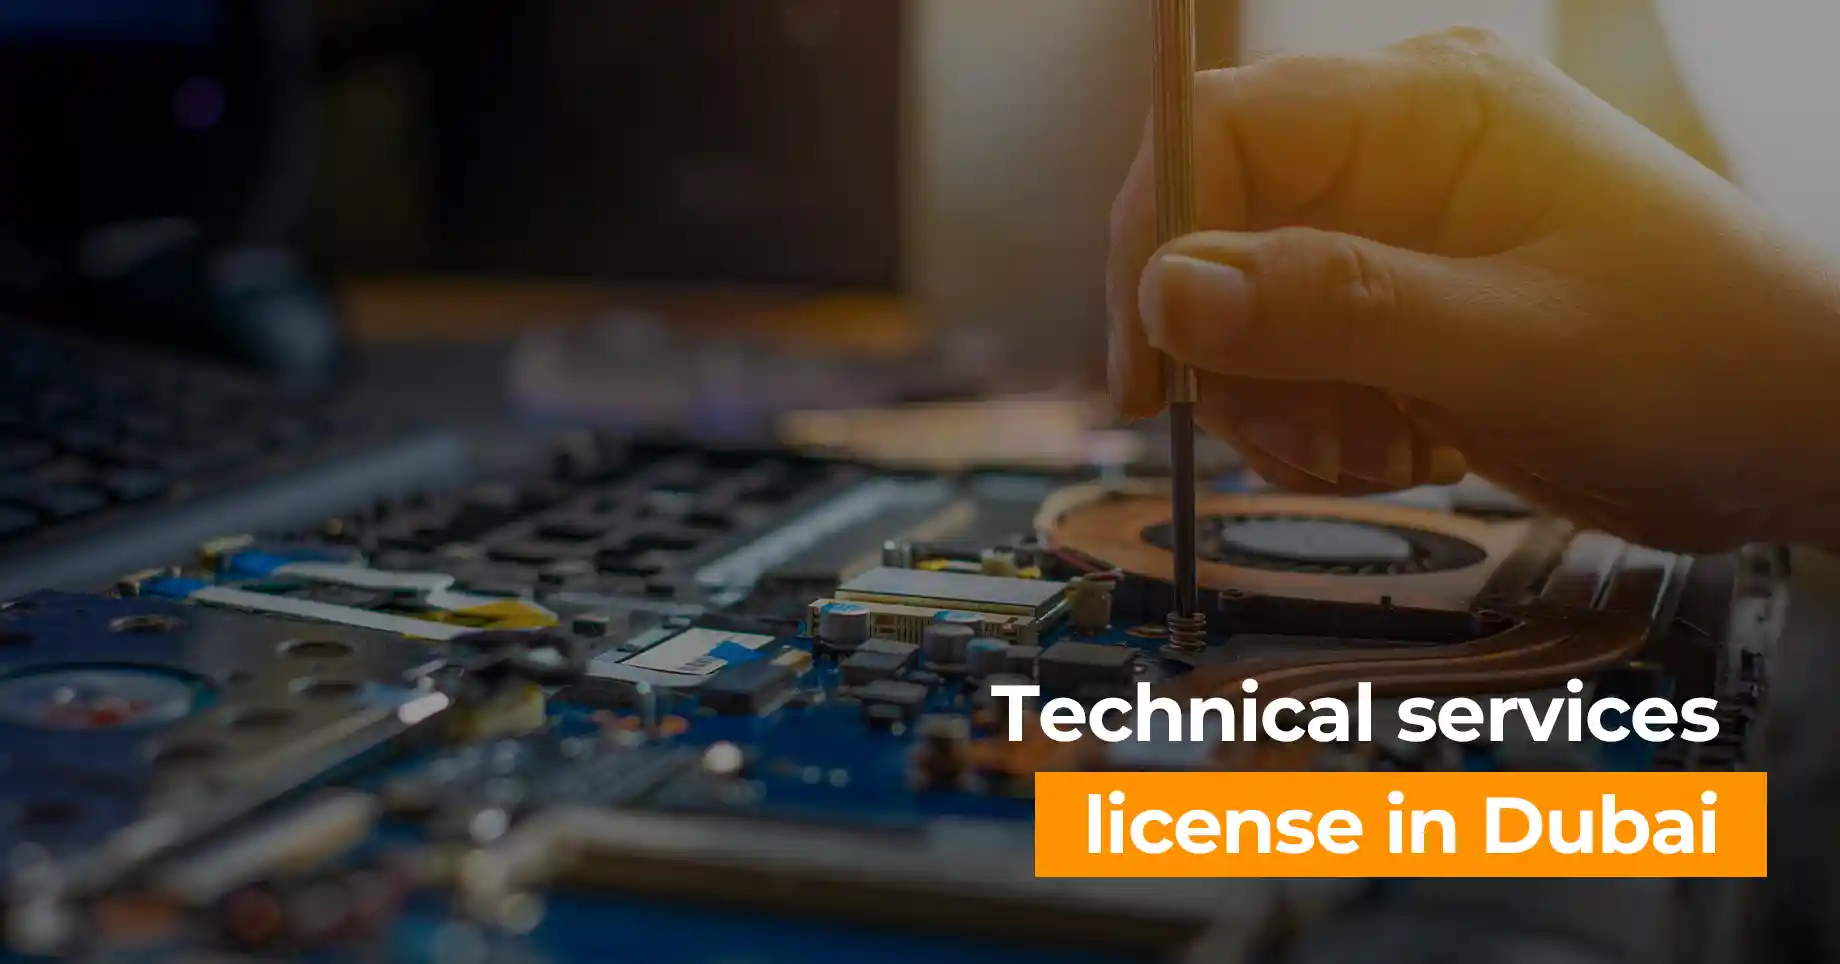 Technical services license in Dubai